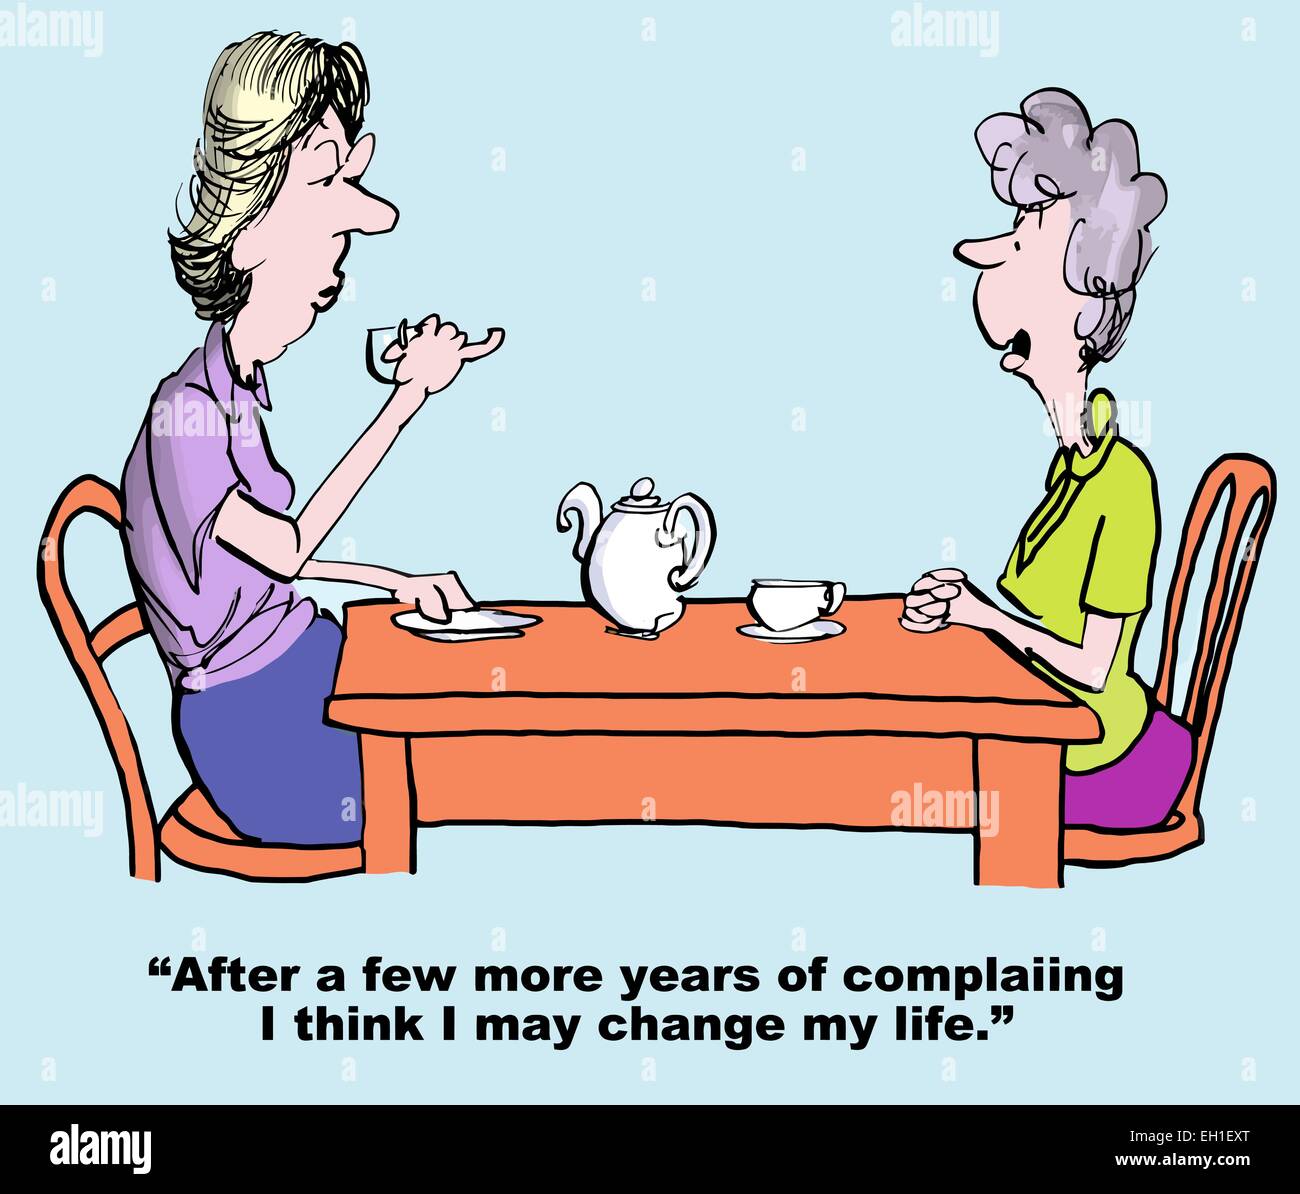 Karikatur von zwei Frauen reden, sagt man "Nach ein paar weiteren Jahren beschweren, ich denke, dass ich mein Leben verändern kann." Stock Vektor